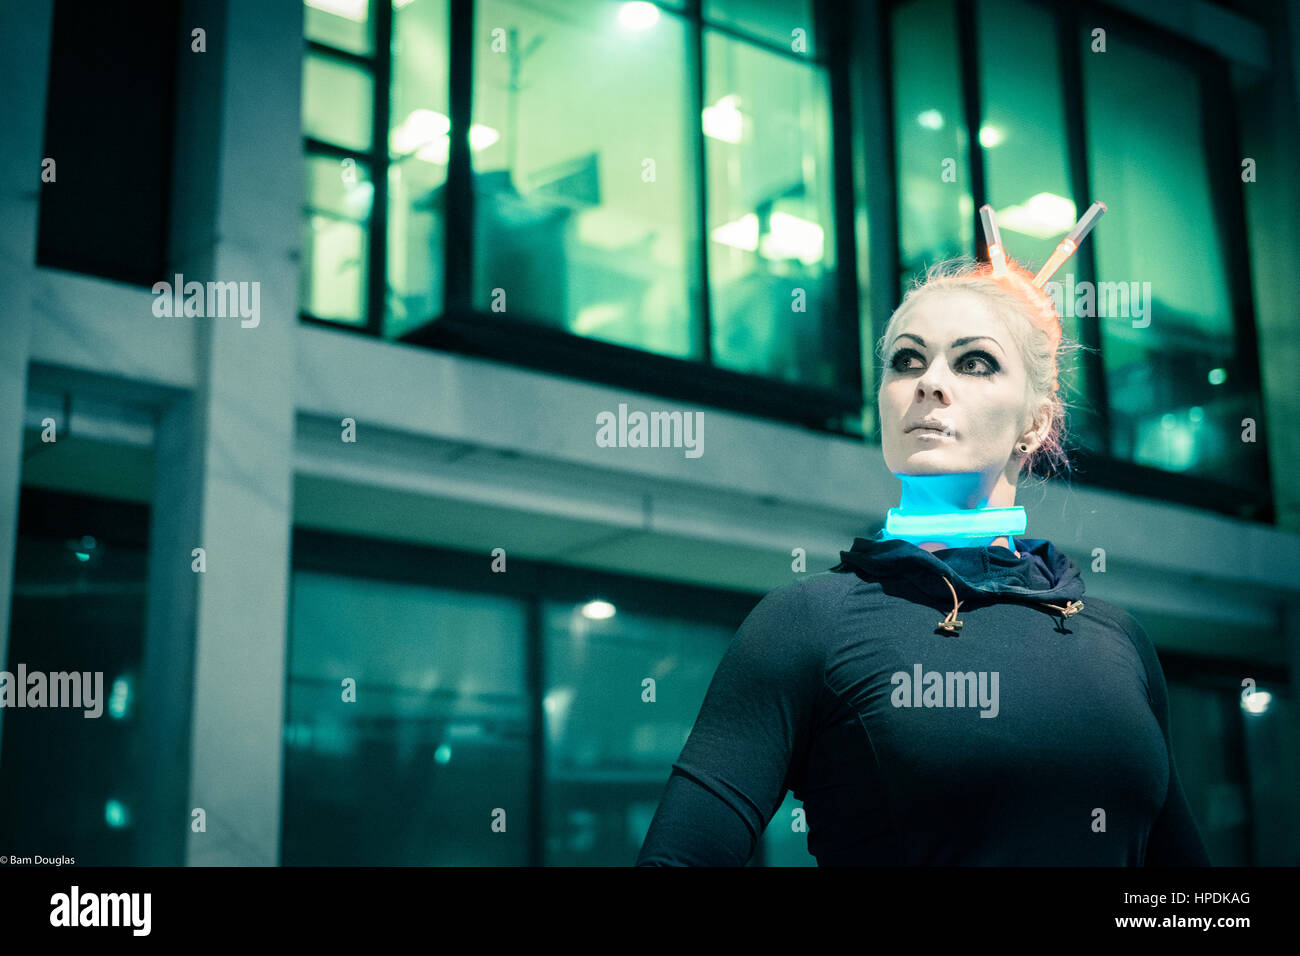 A cyberpunk themed fashion shoot at night Stock Photo